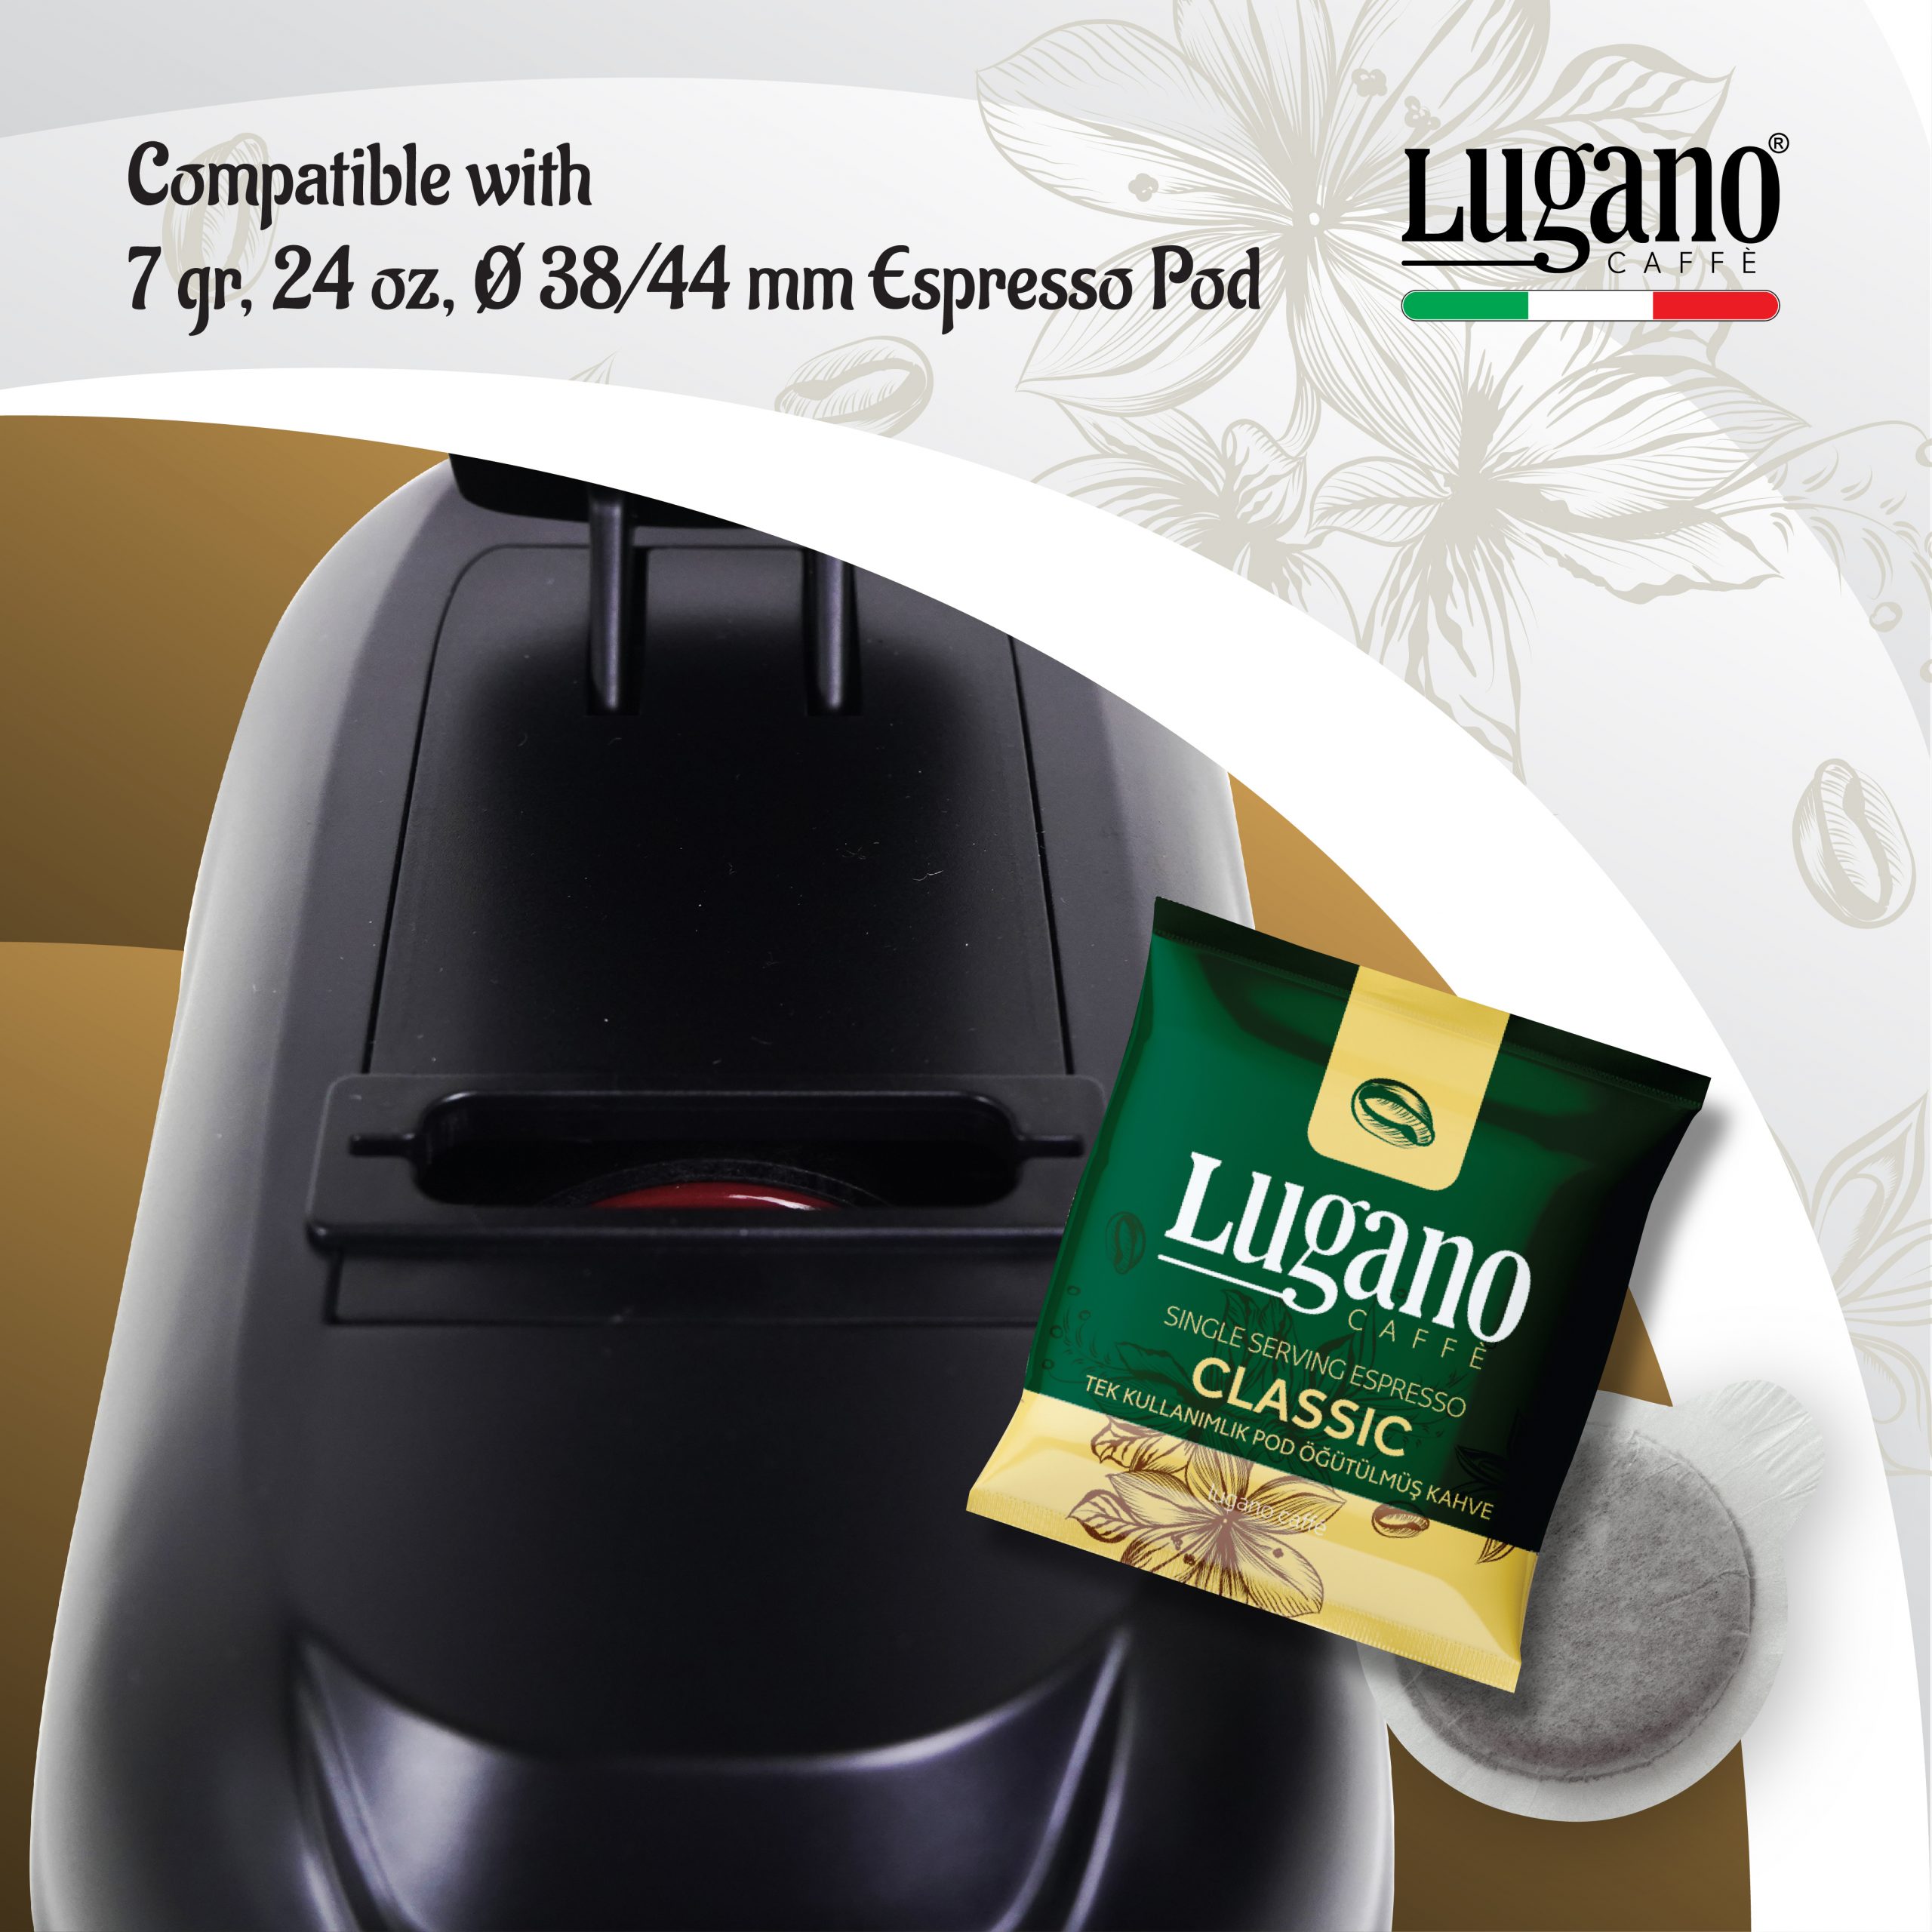 Lugnao Mini Elite Espresso Pod dimensions